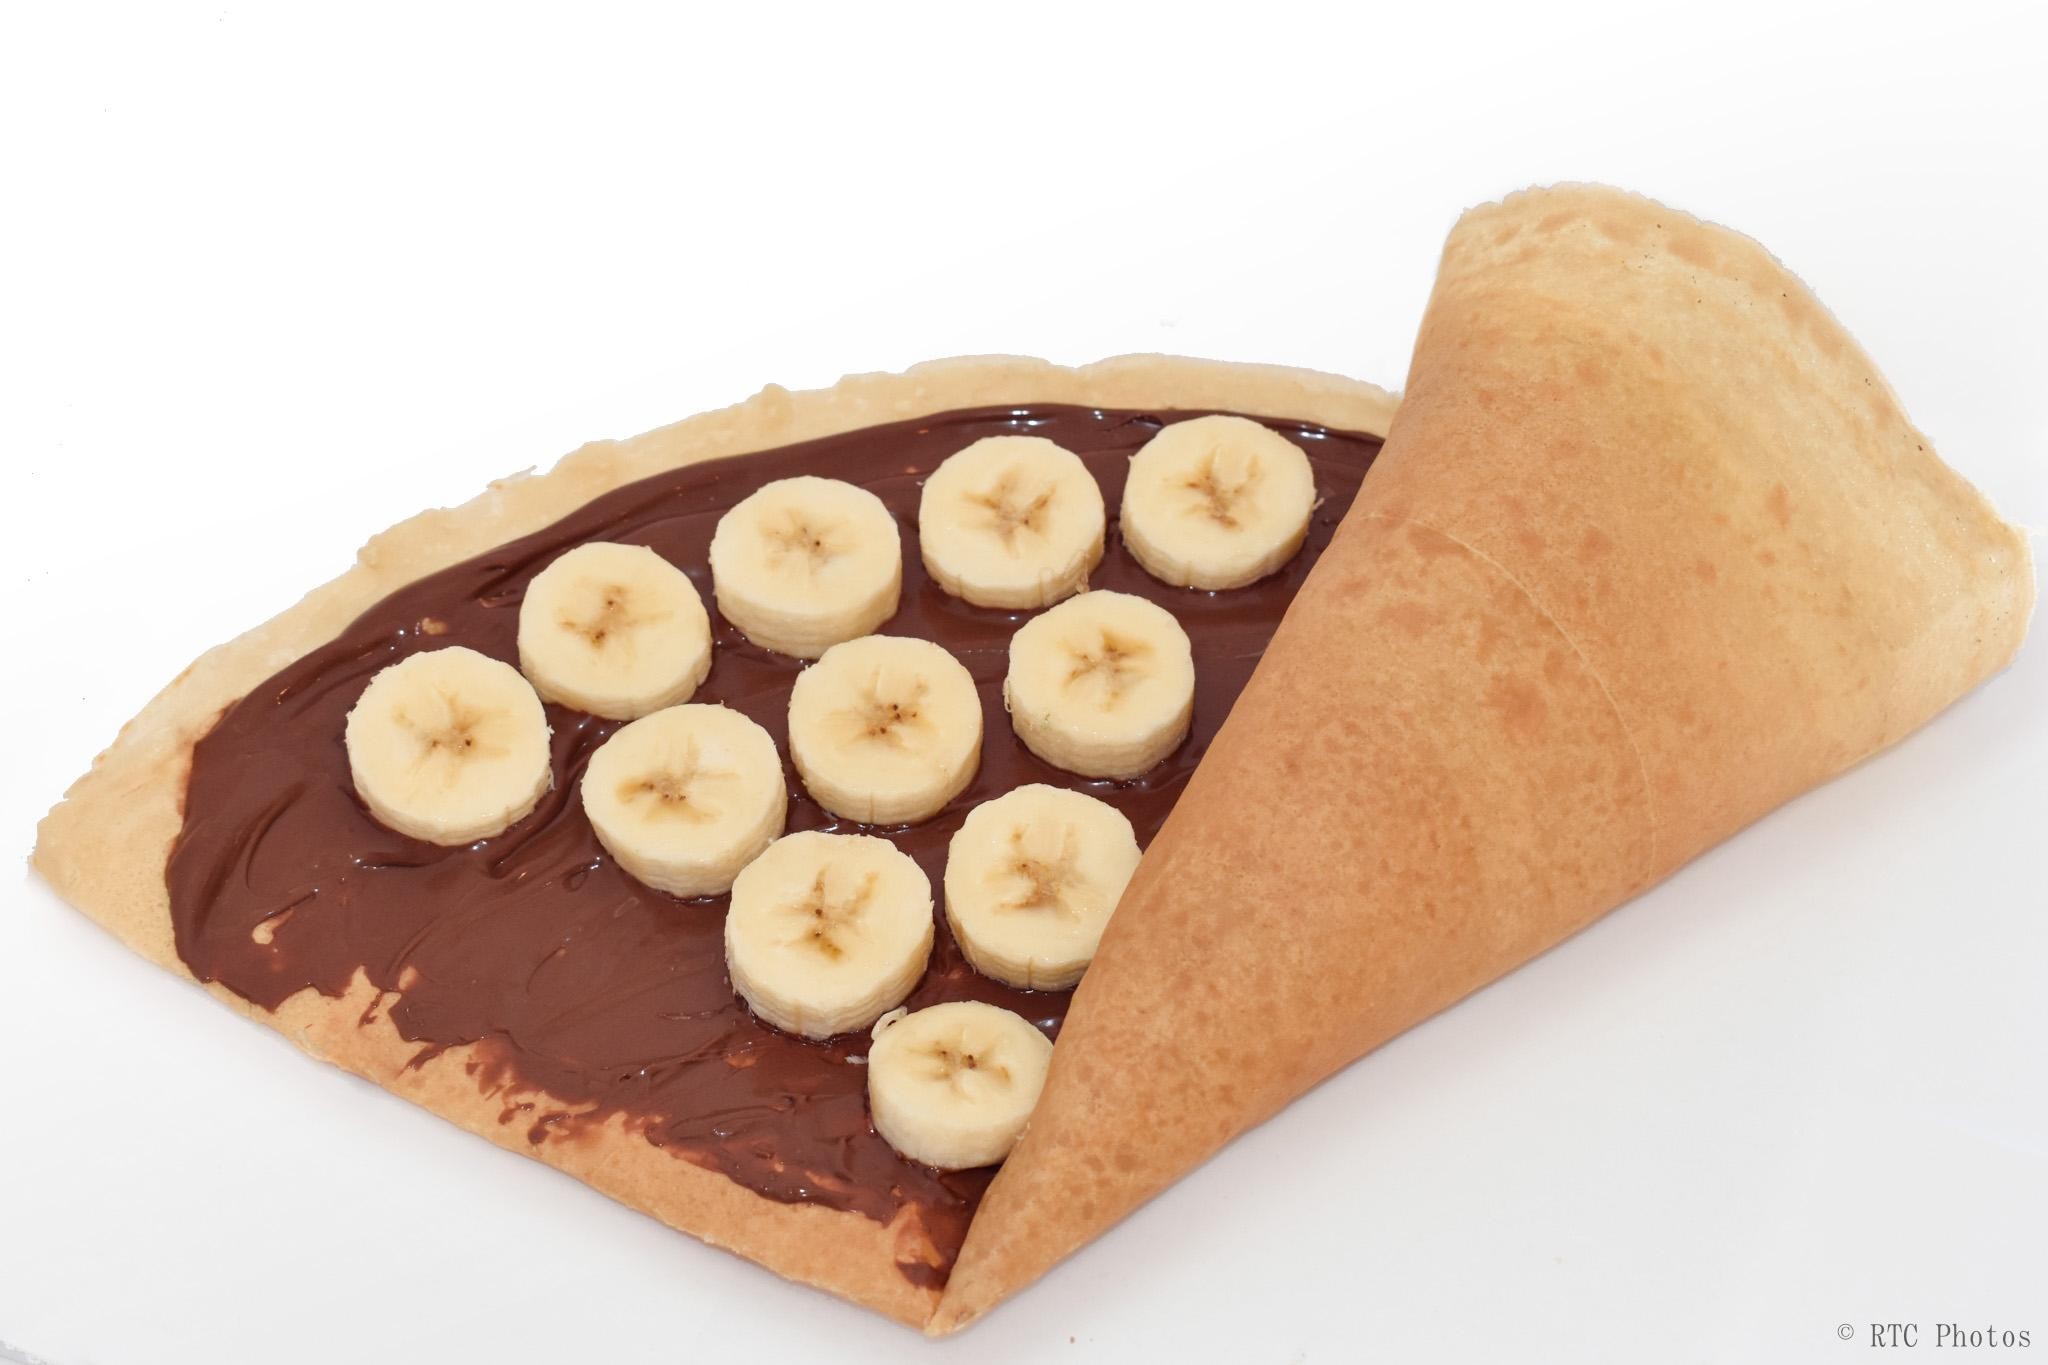 10. Banana & Nutella